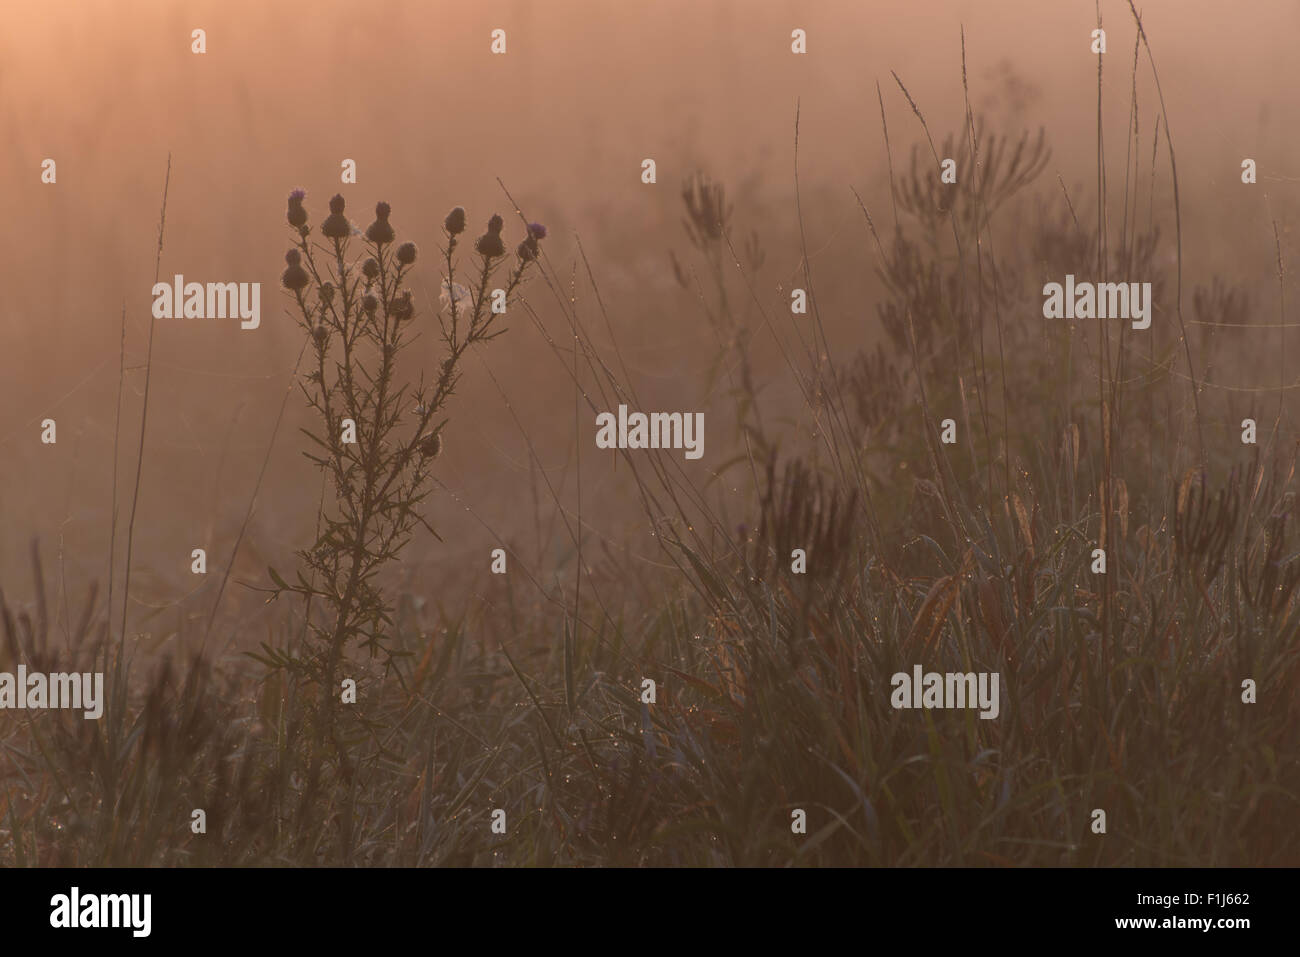 La silhouette di un fiore di cardo e altre piante di acquitrini nelle prime ore del mattino, bagliore arancione a coperto nebbia marsh. Foto Stock